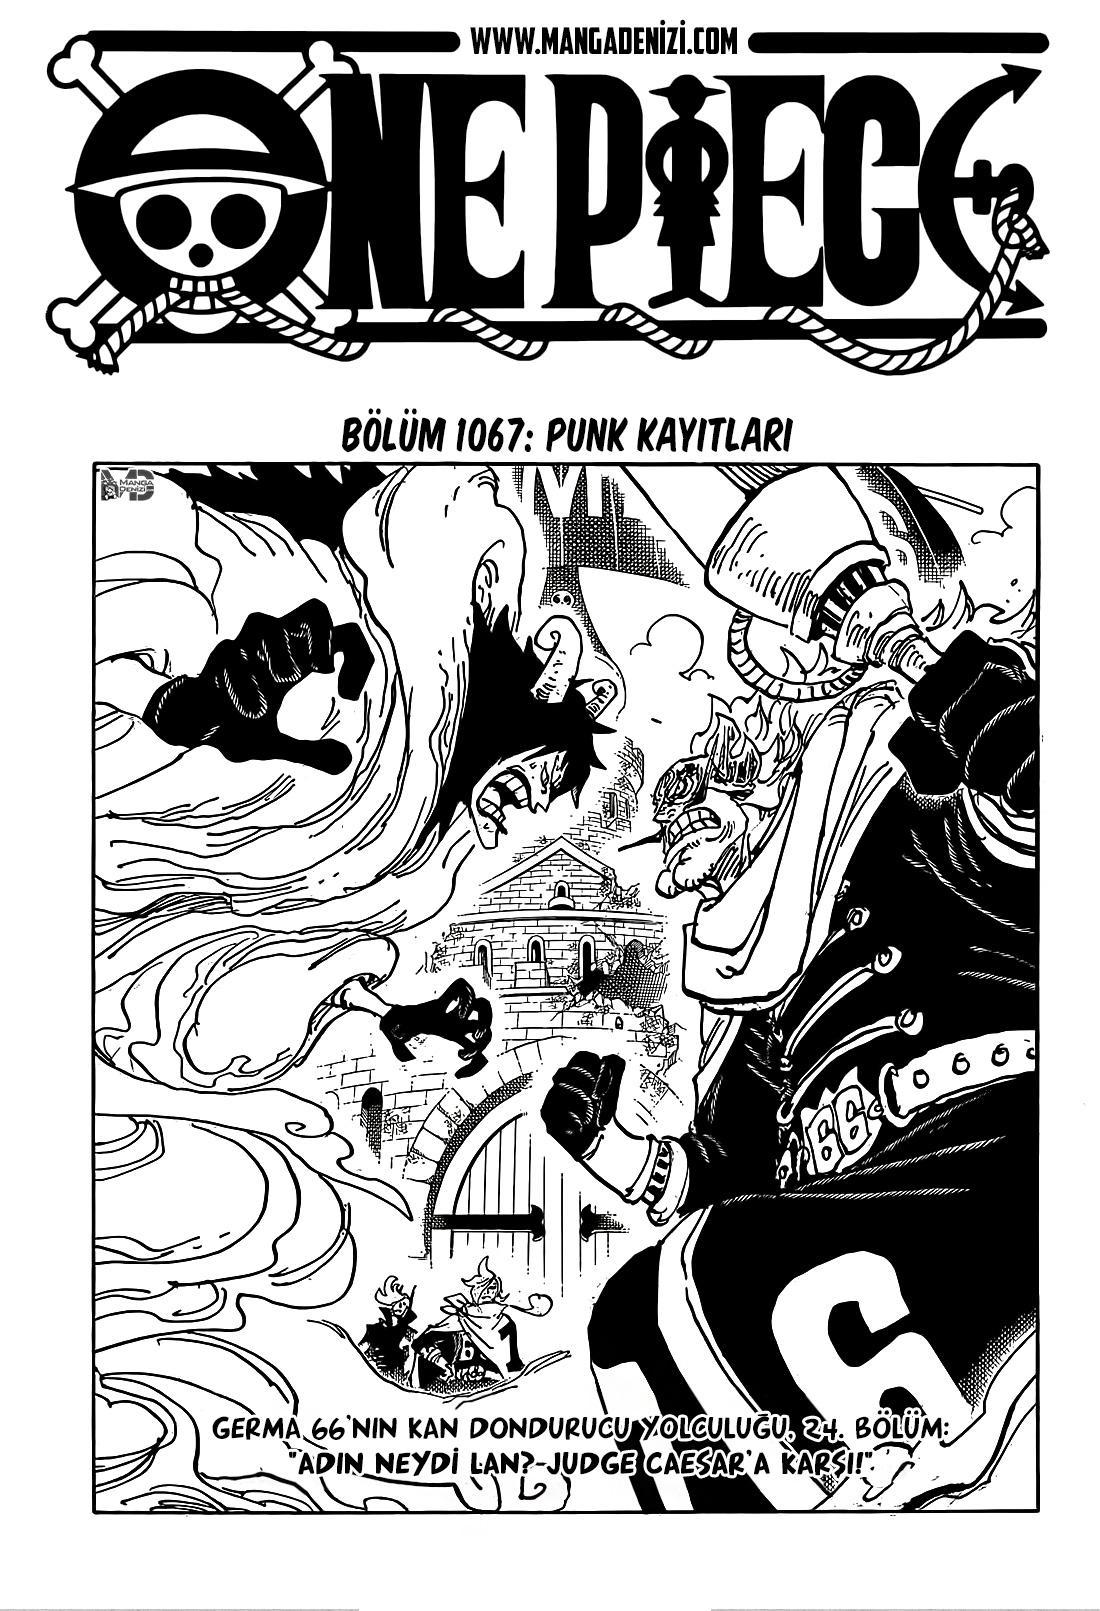 One Piece mangasının 1067 bölümünün 2. sayfasını okuyorsunuz.